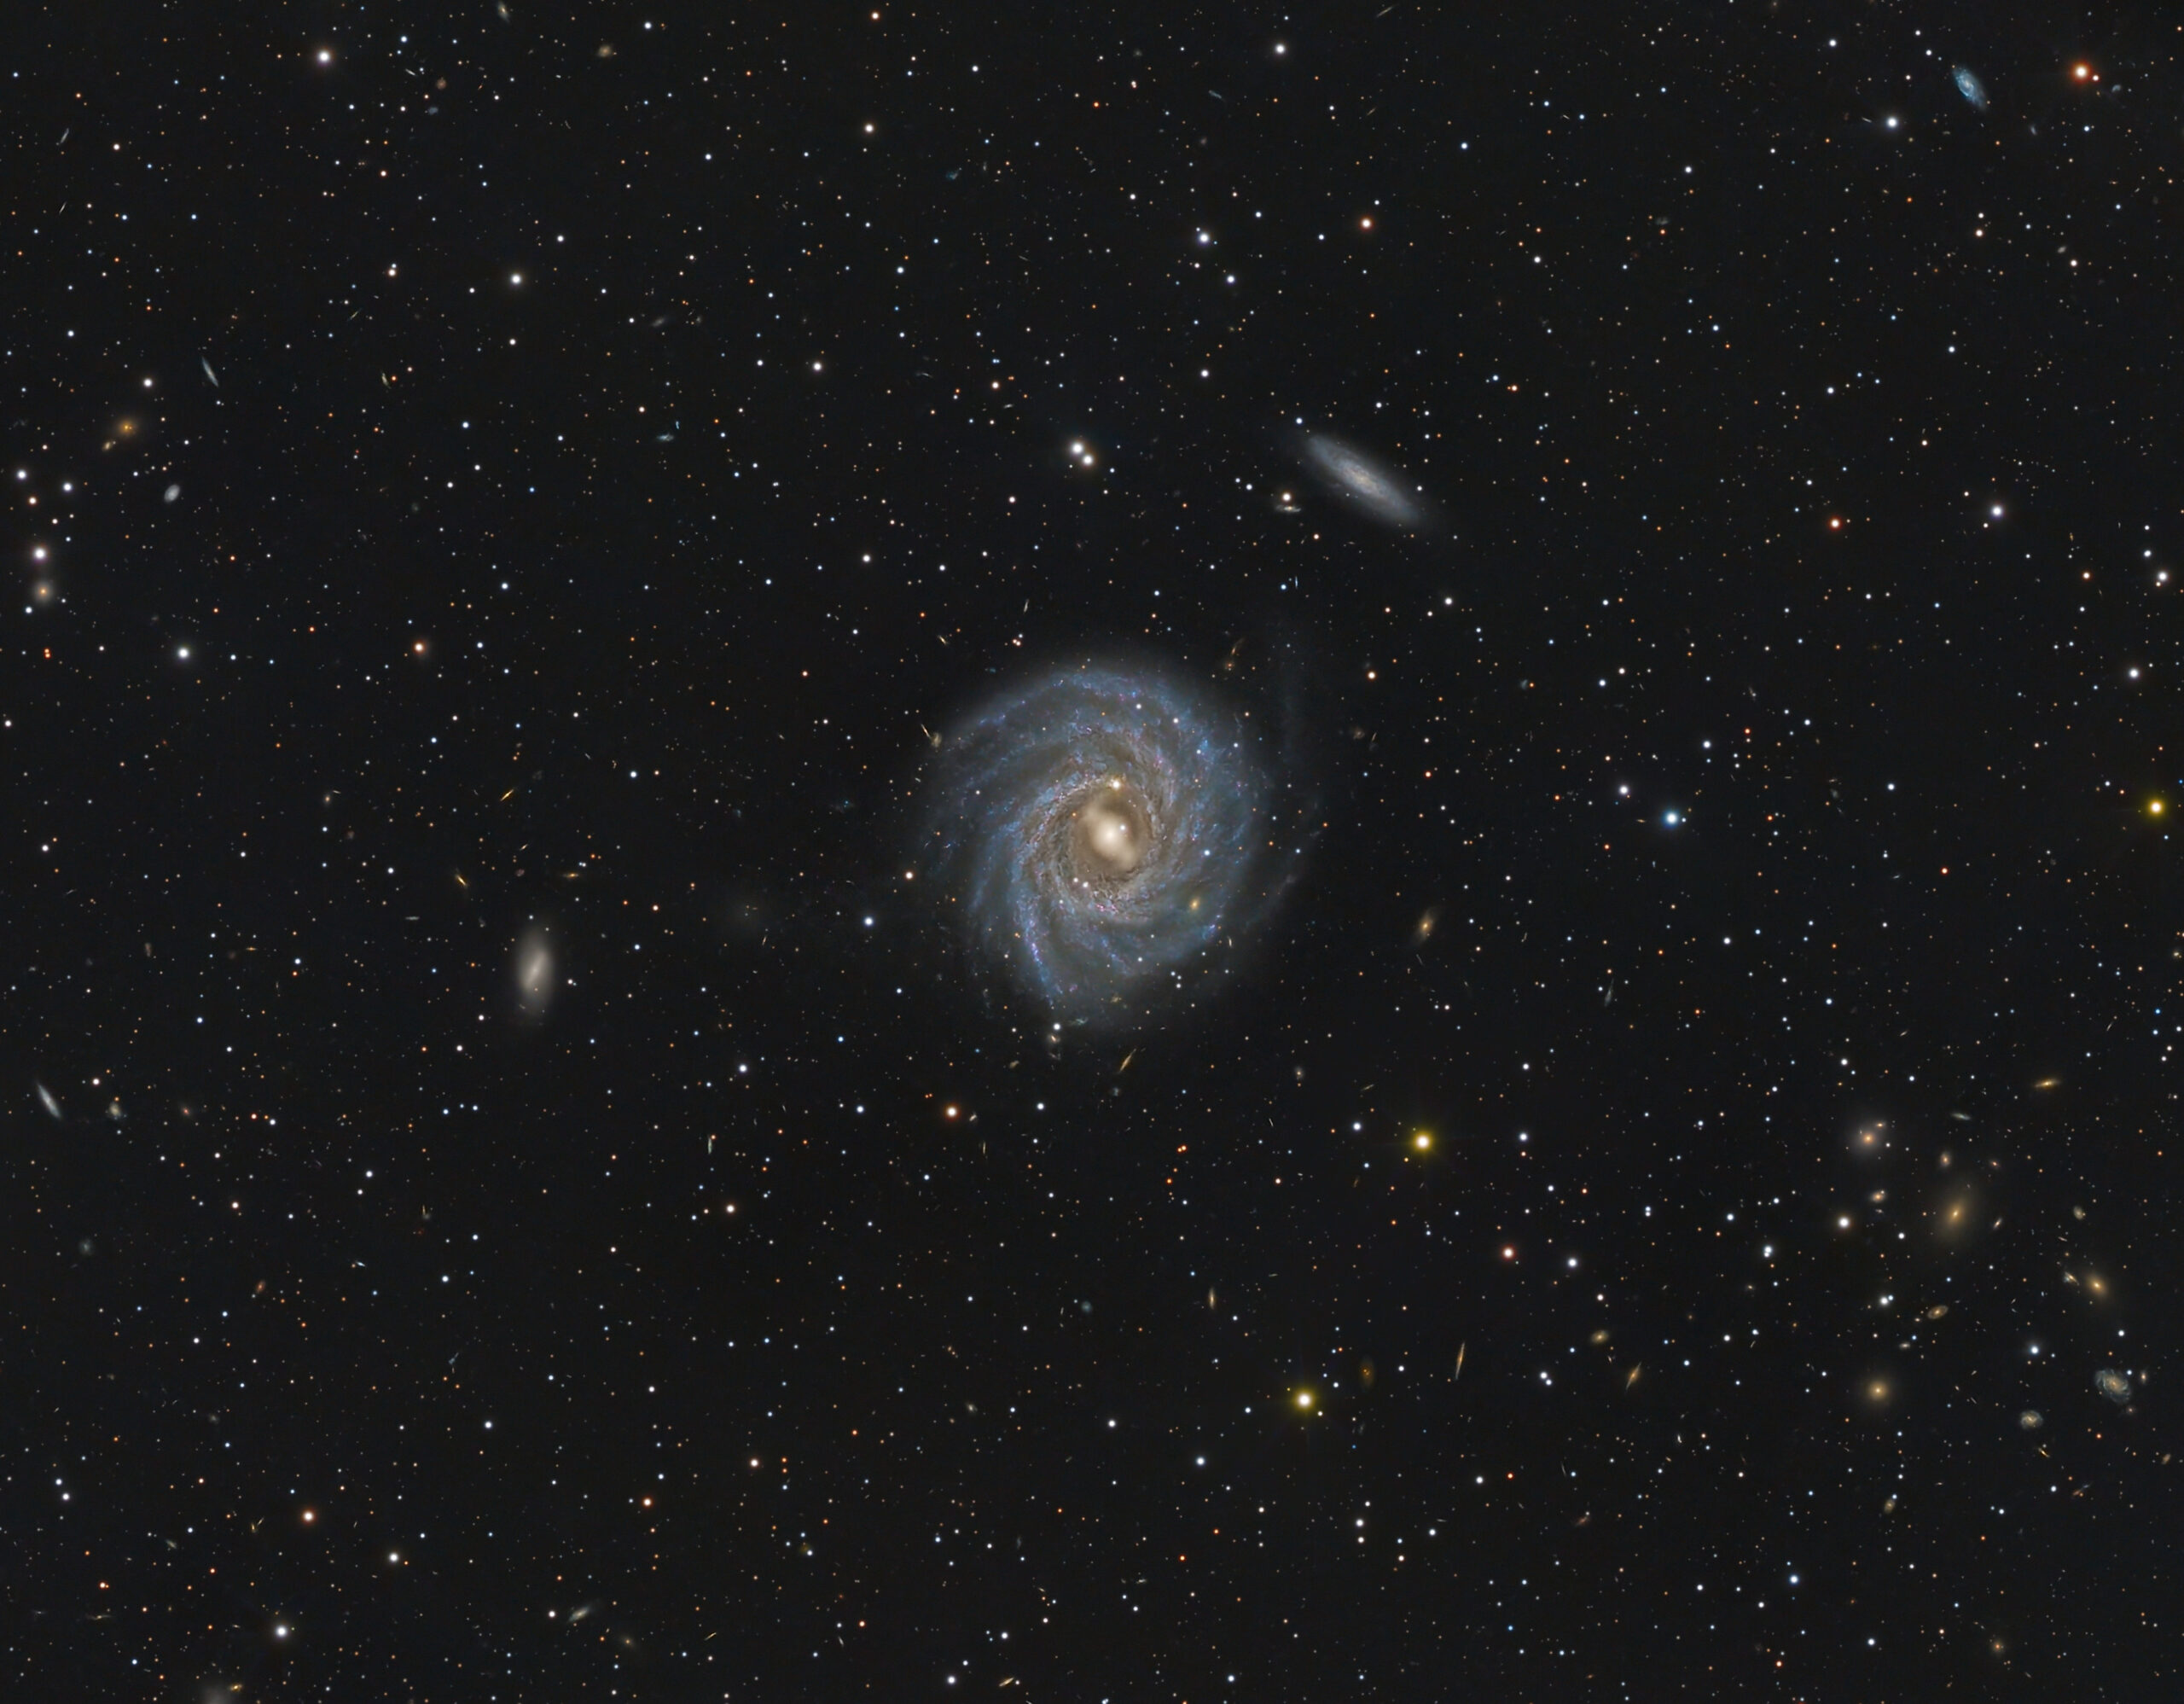 NGC 2223